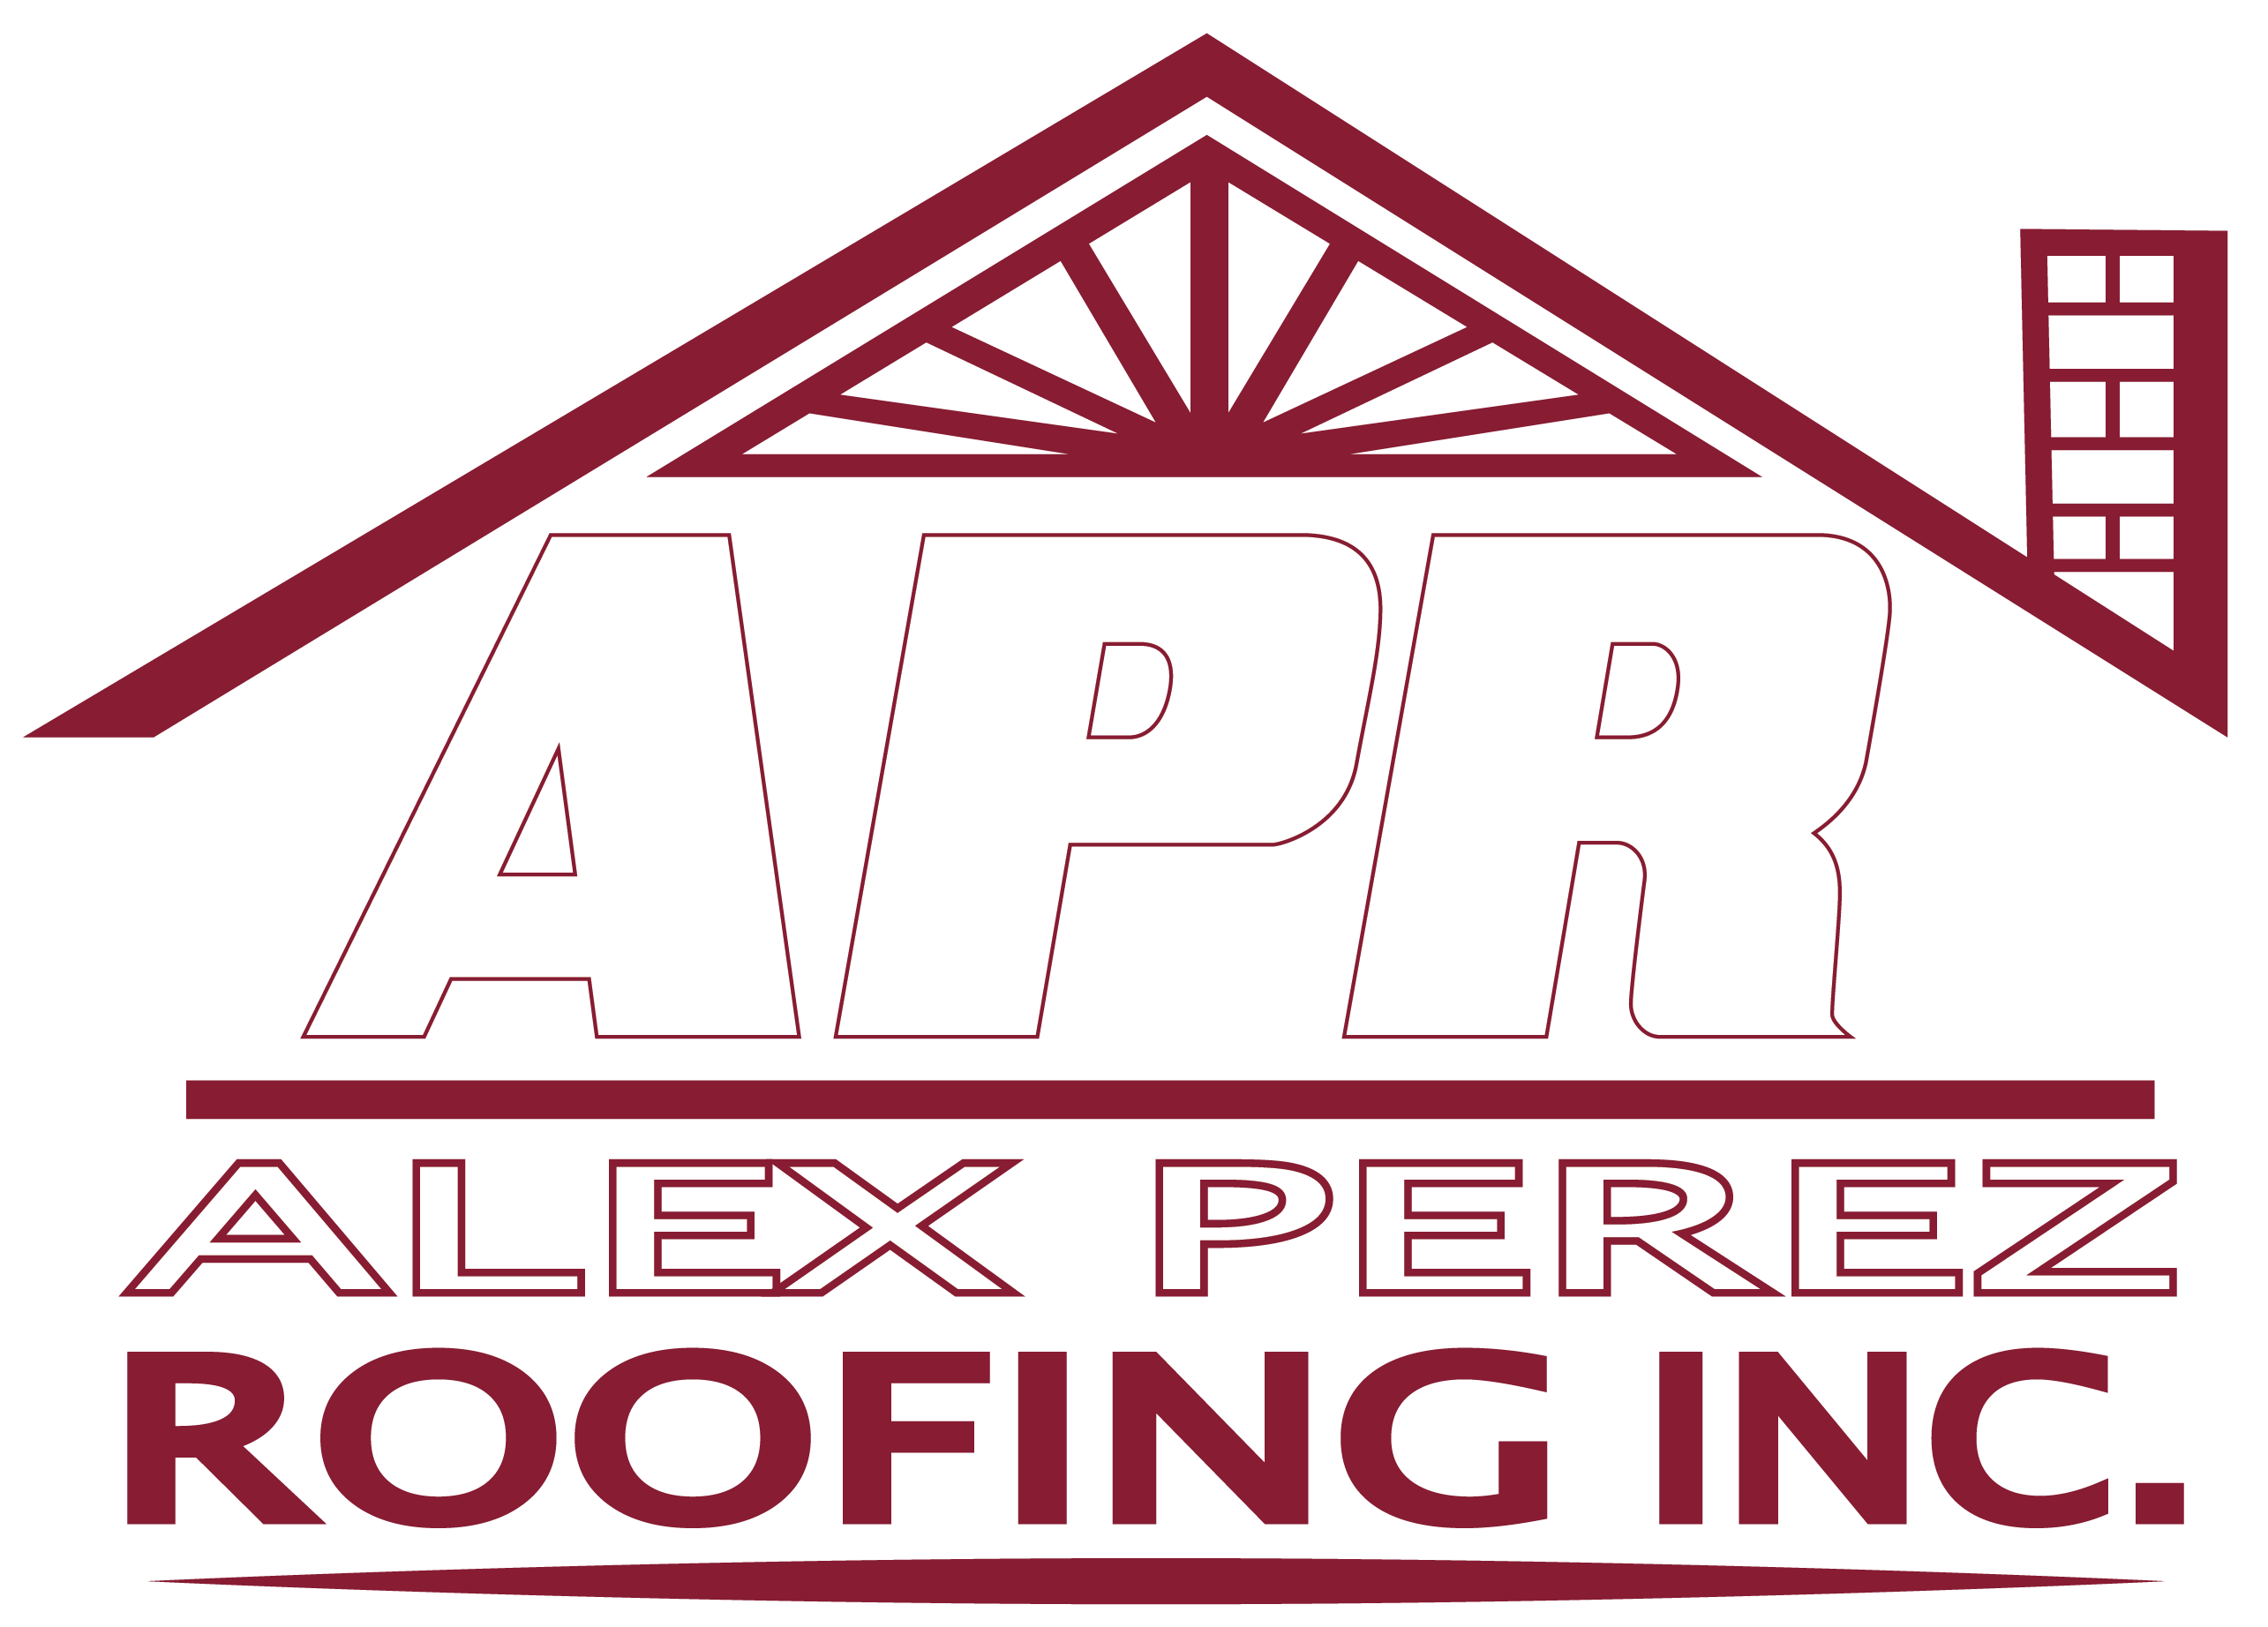 Alex Perez Roofing